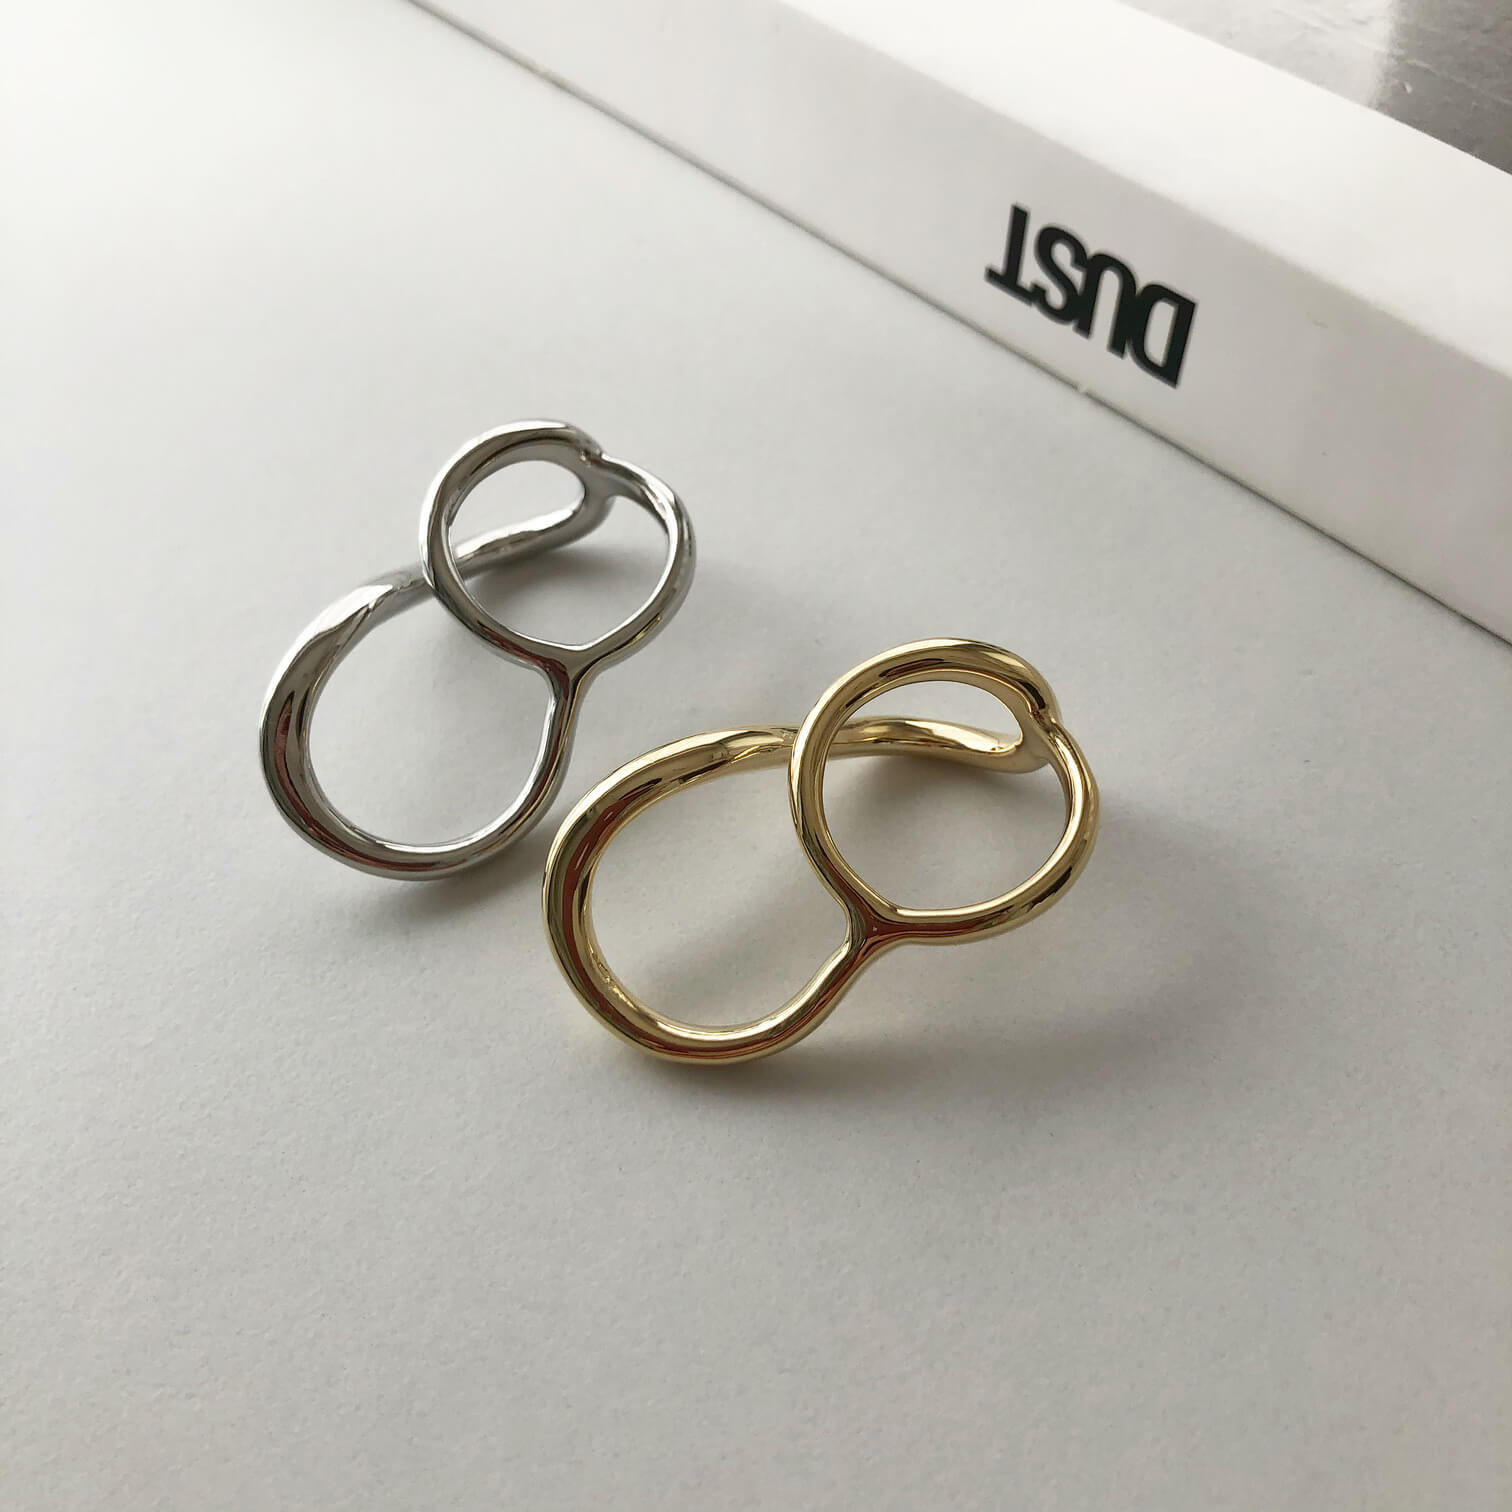 ダブルフィンガーリング 12~13号 リング 指輪 シンプルデザイン カーブ 曲線 個性的 こなれ感 セパレート 真鍮 デザインリング オフィス ニュアンス 大人かわいい 上品 プレゼント ギフト